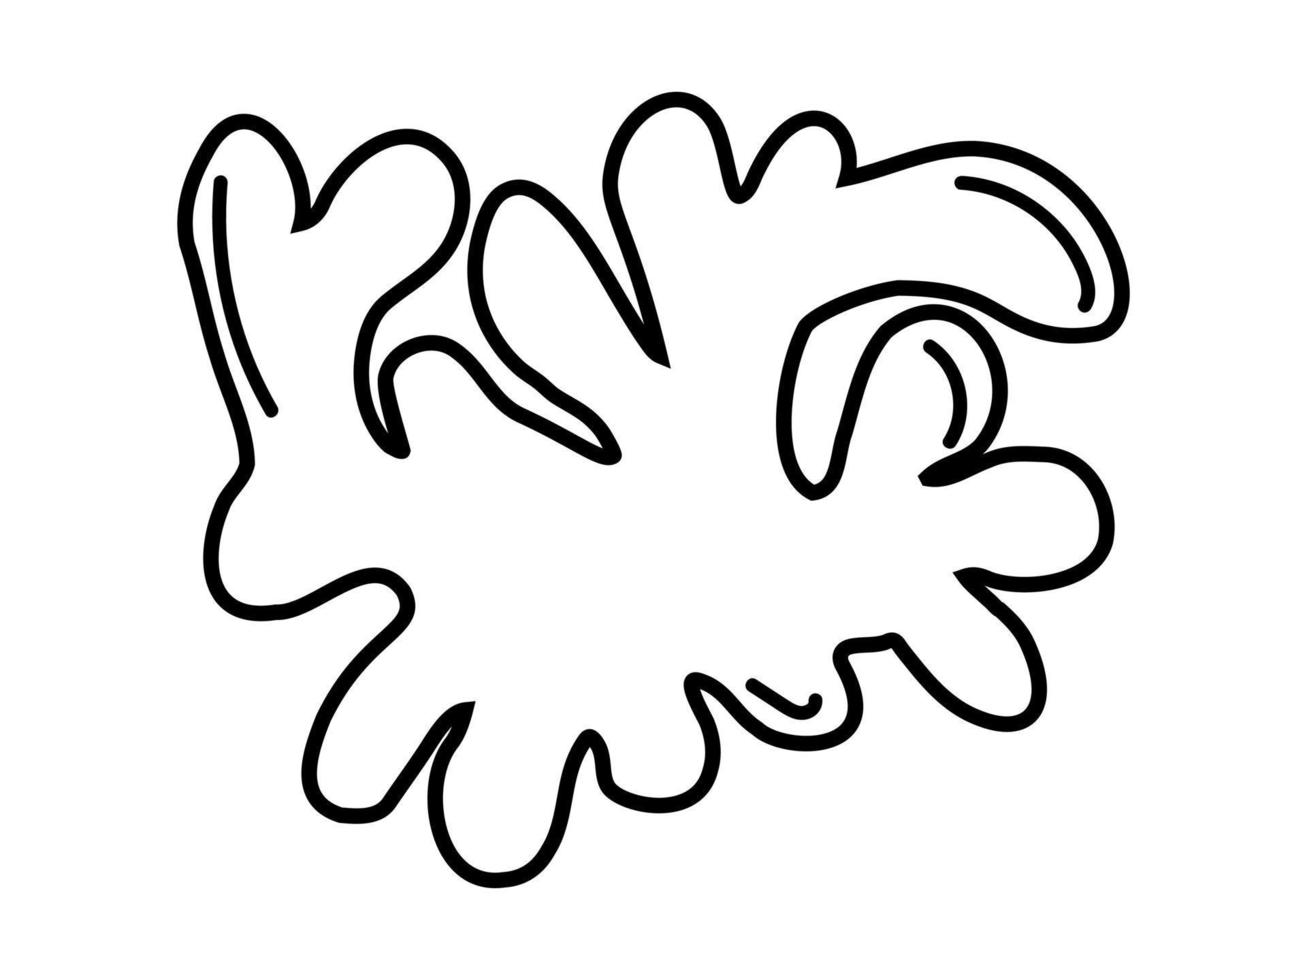 algas submarinas. algas marinhas. oceano doodle mão desenhada ilustração vetorial isolada no branco. vetor